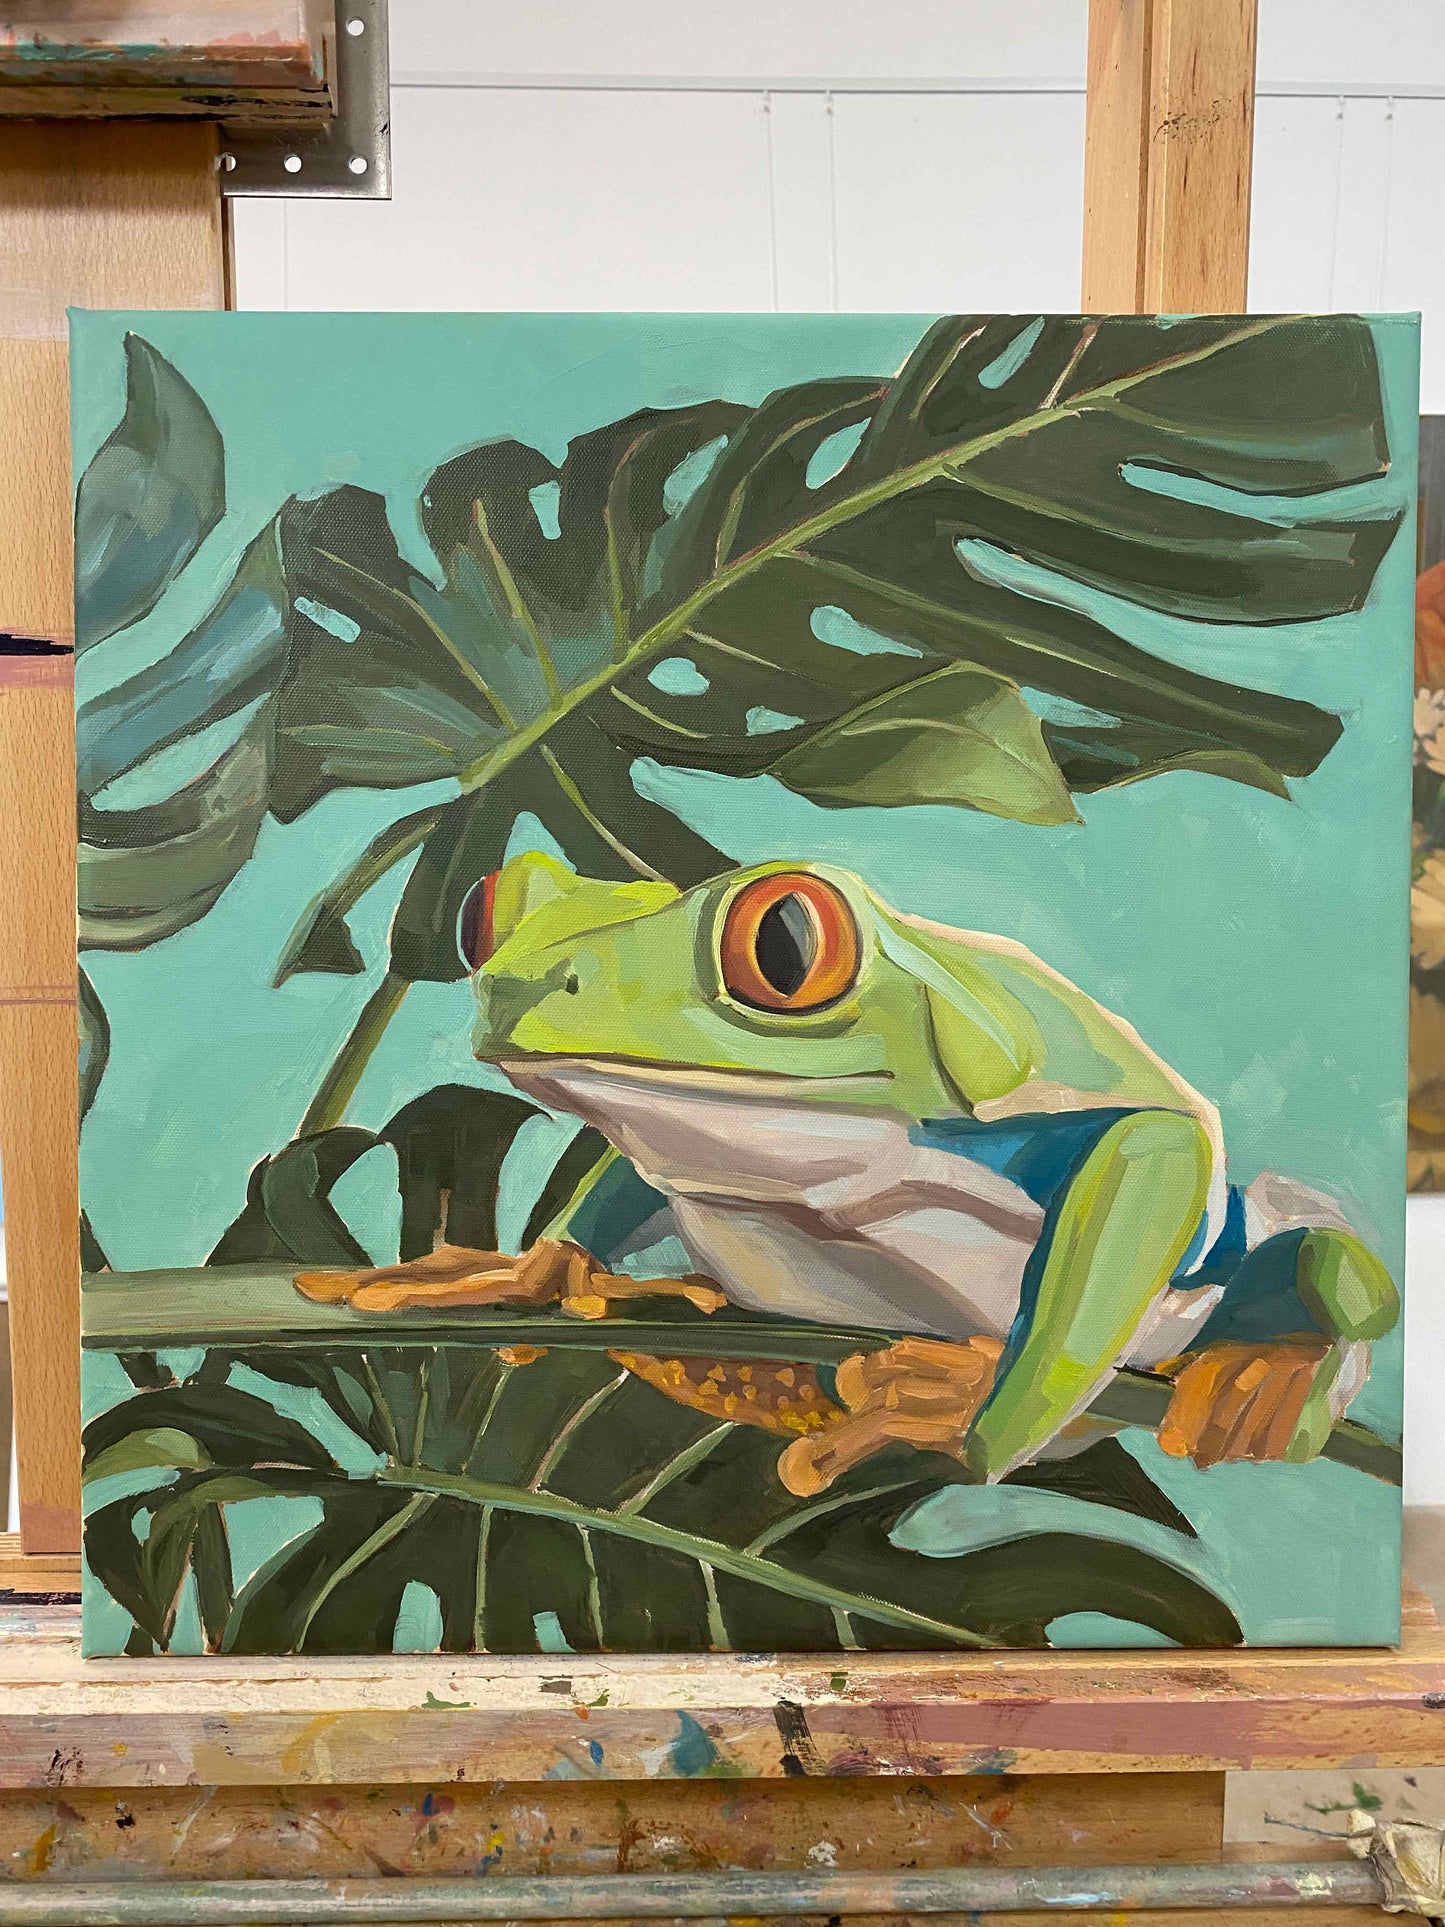 2022, roach frog Lotte 40 x 40 cm